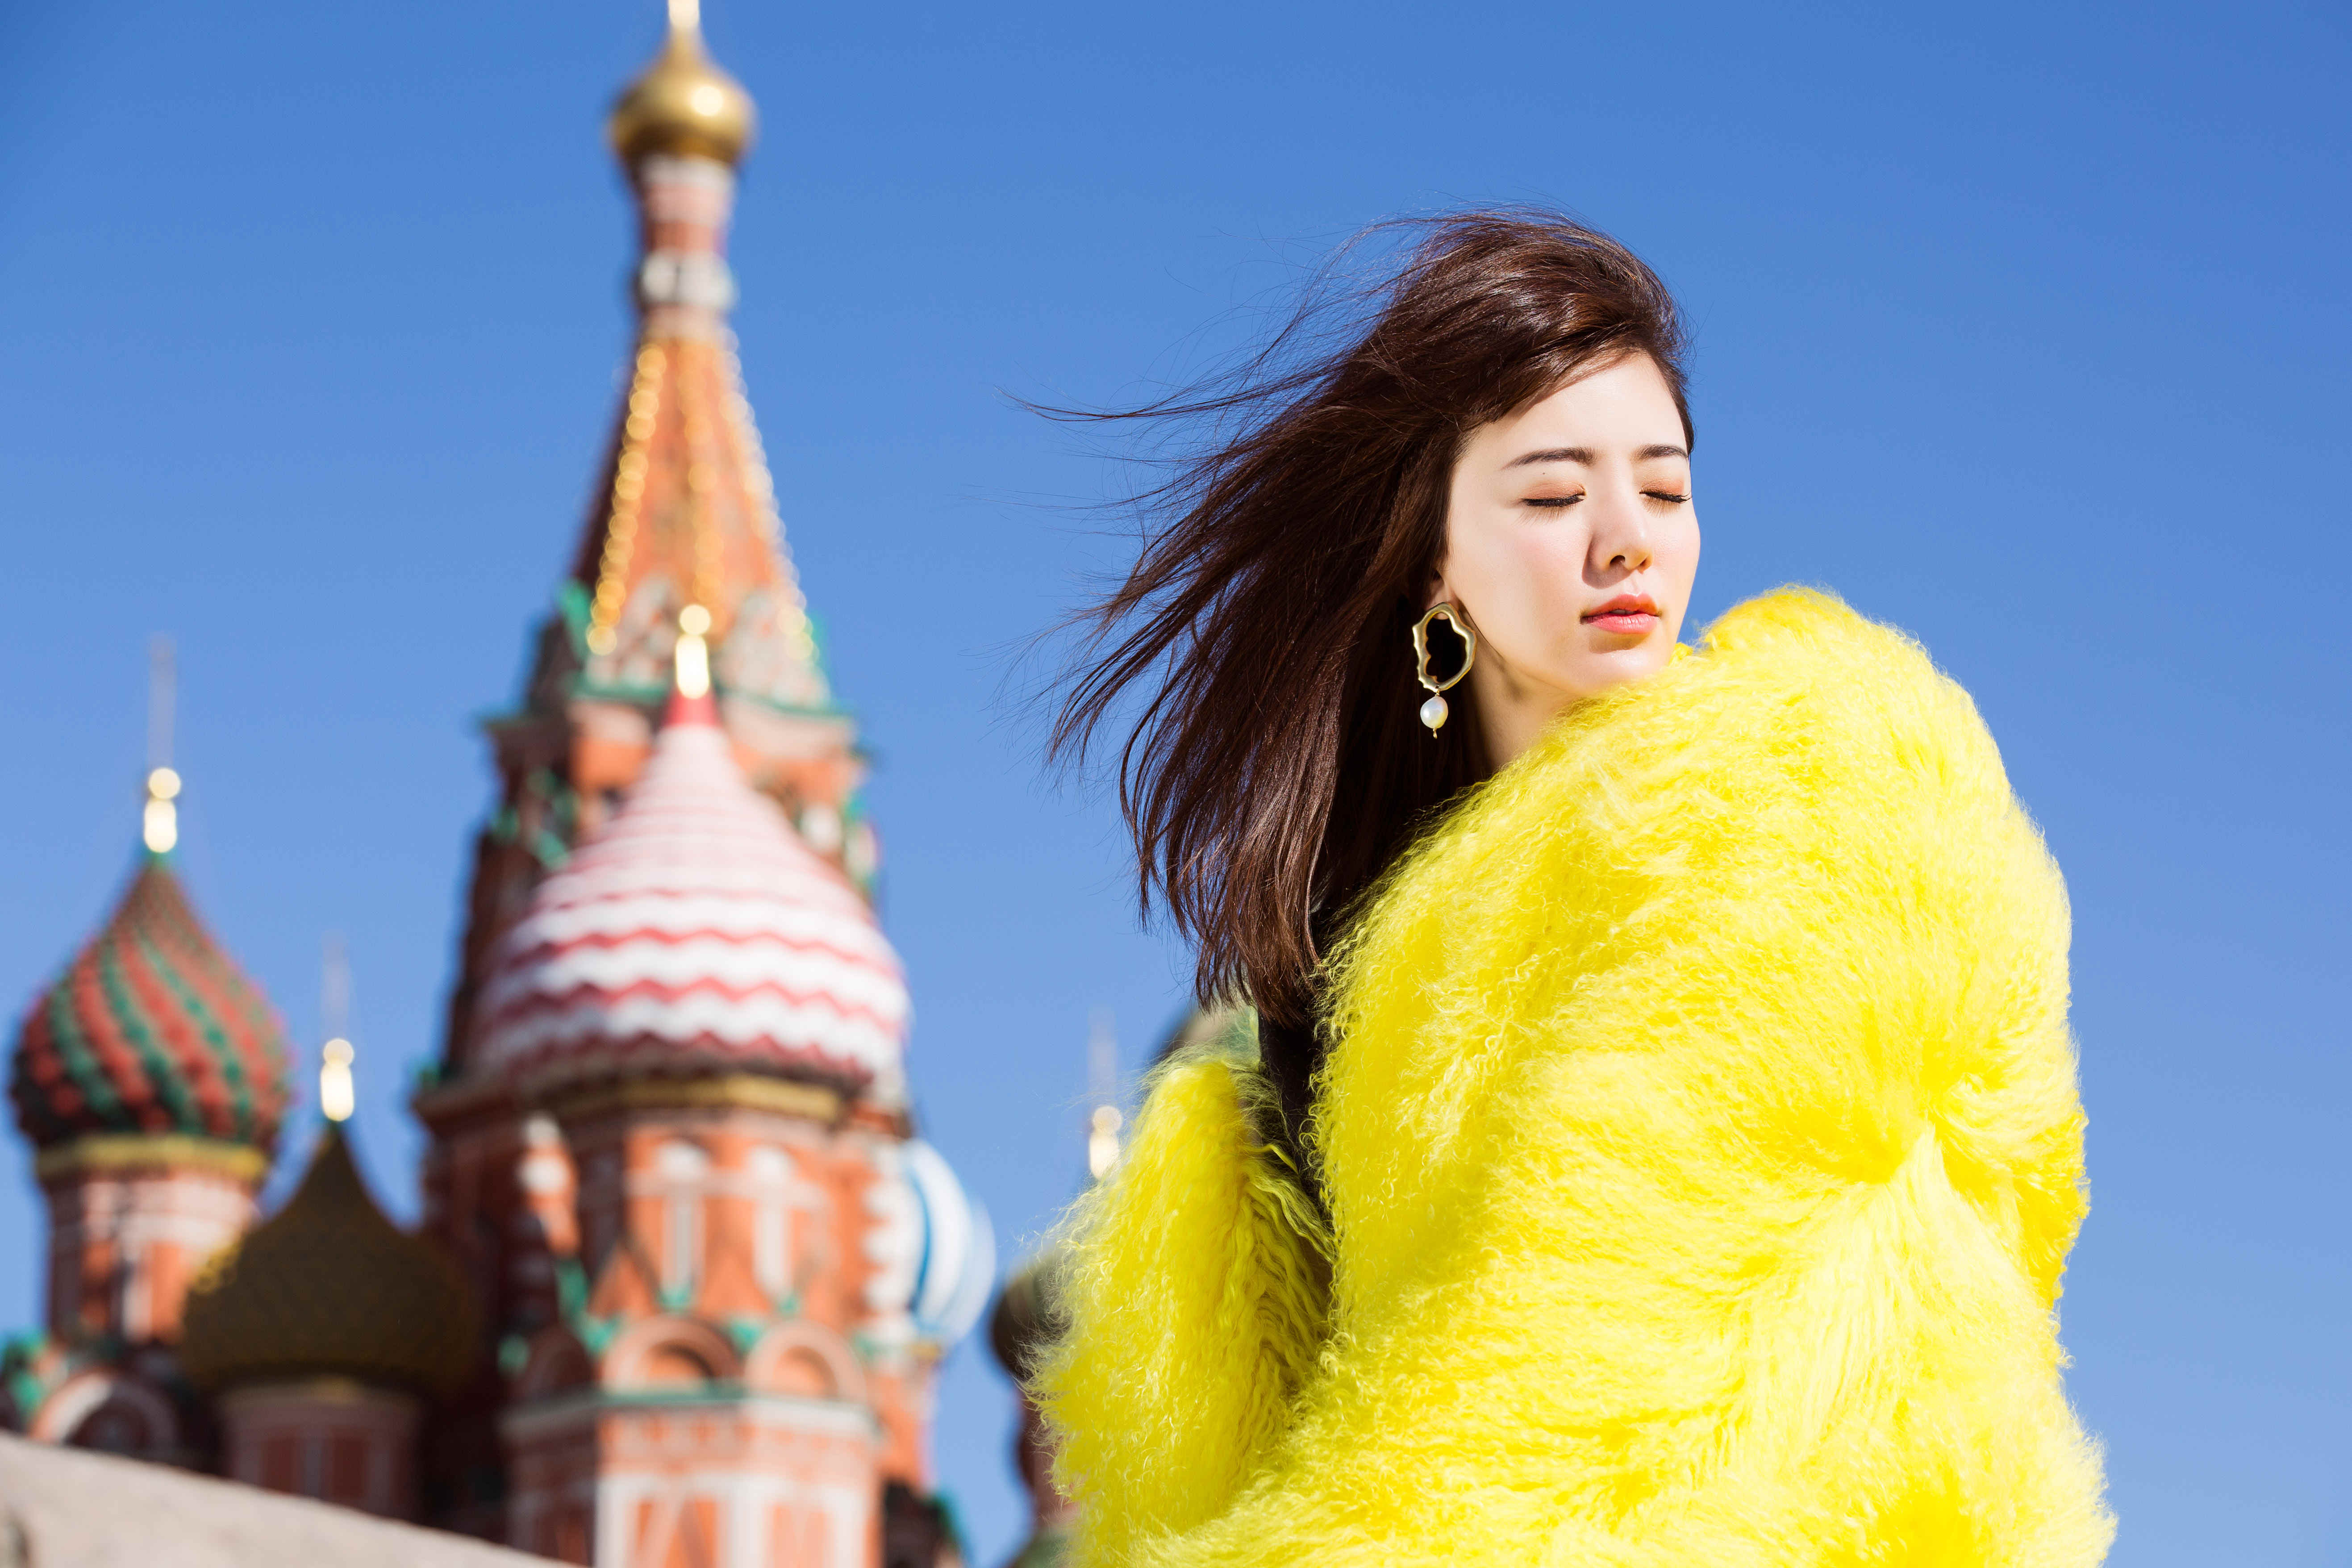 阿兰莫斯科时尚街拍 穿黄色外套十分亮眼